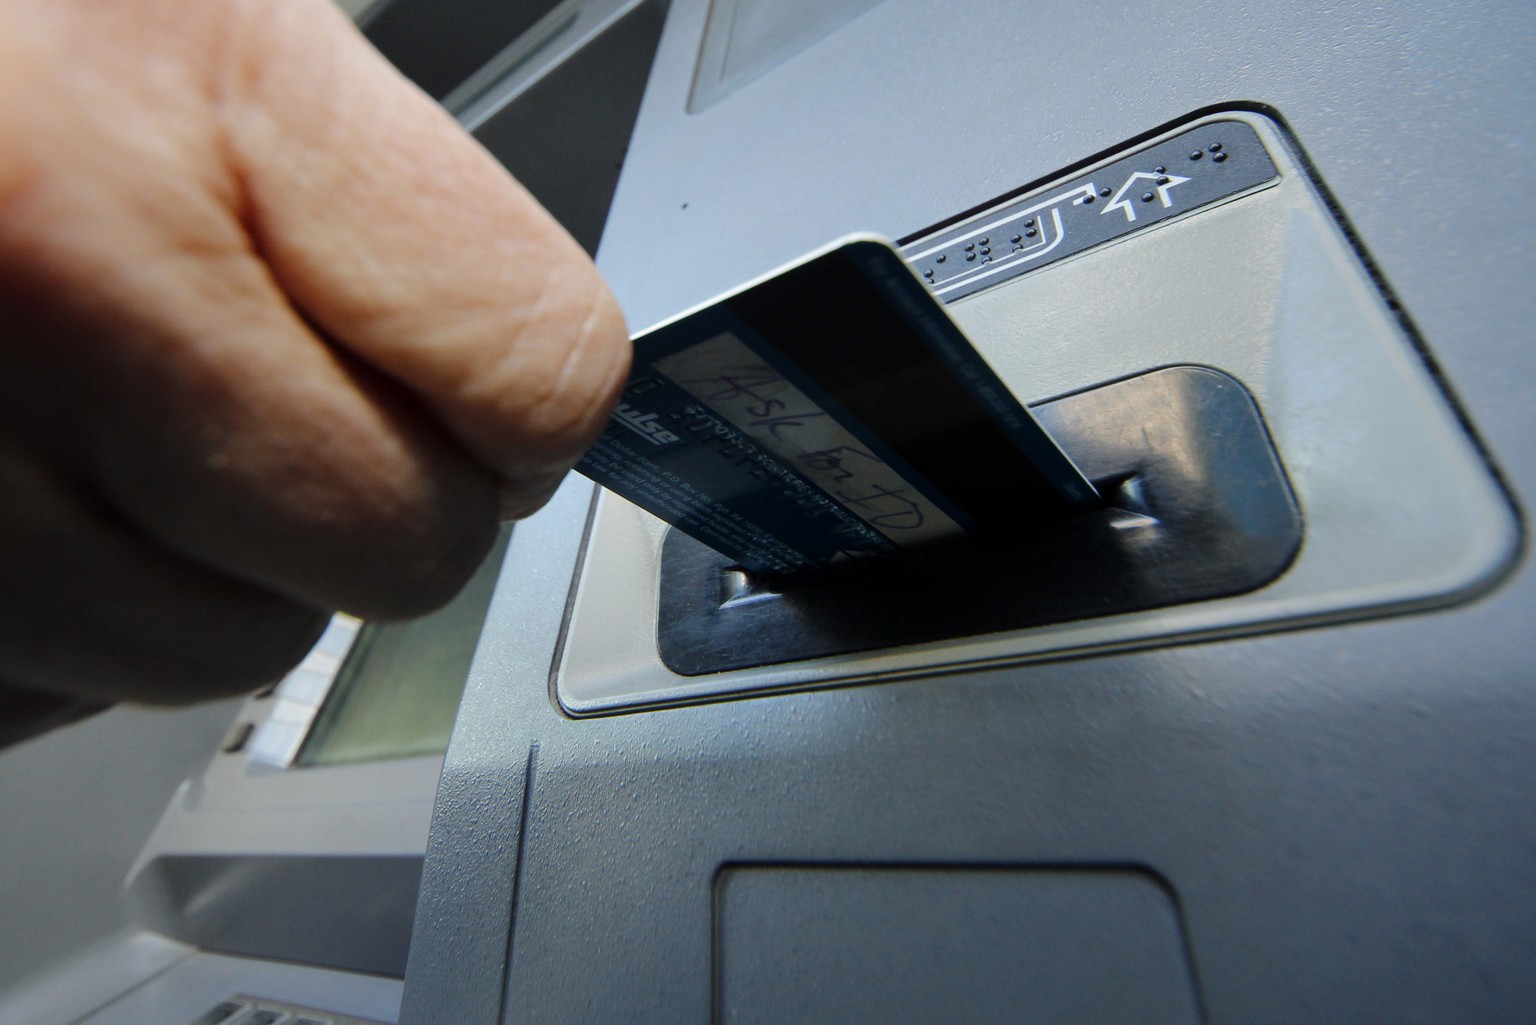 Debitkarten müssen in einigen Ländern erst freigeschaltet werden, damit man damit Geld abheben kann.